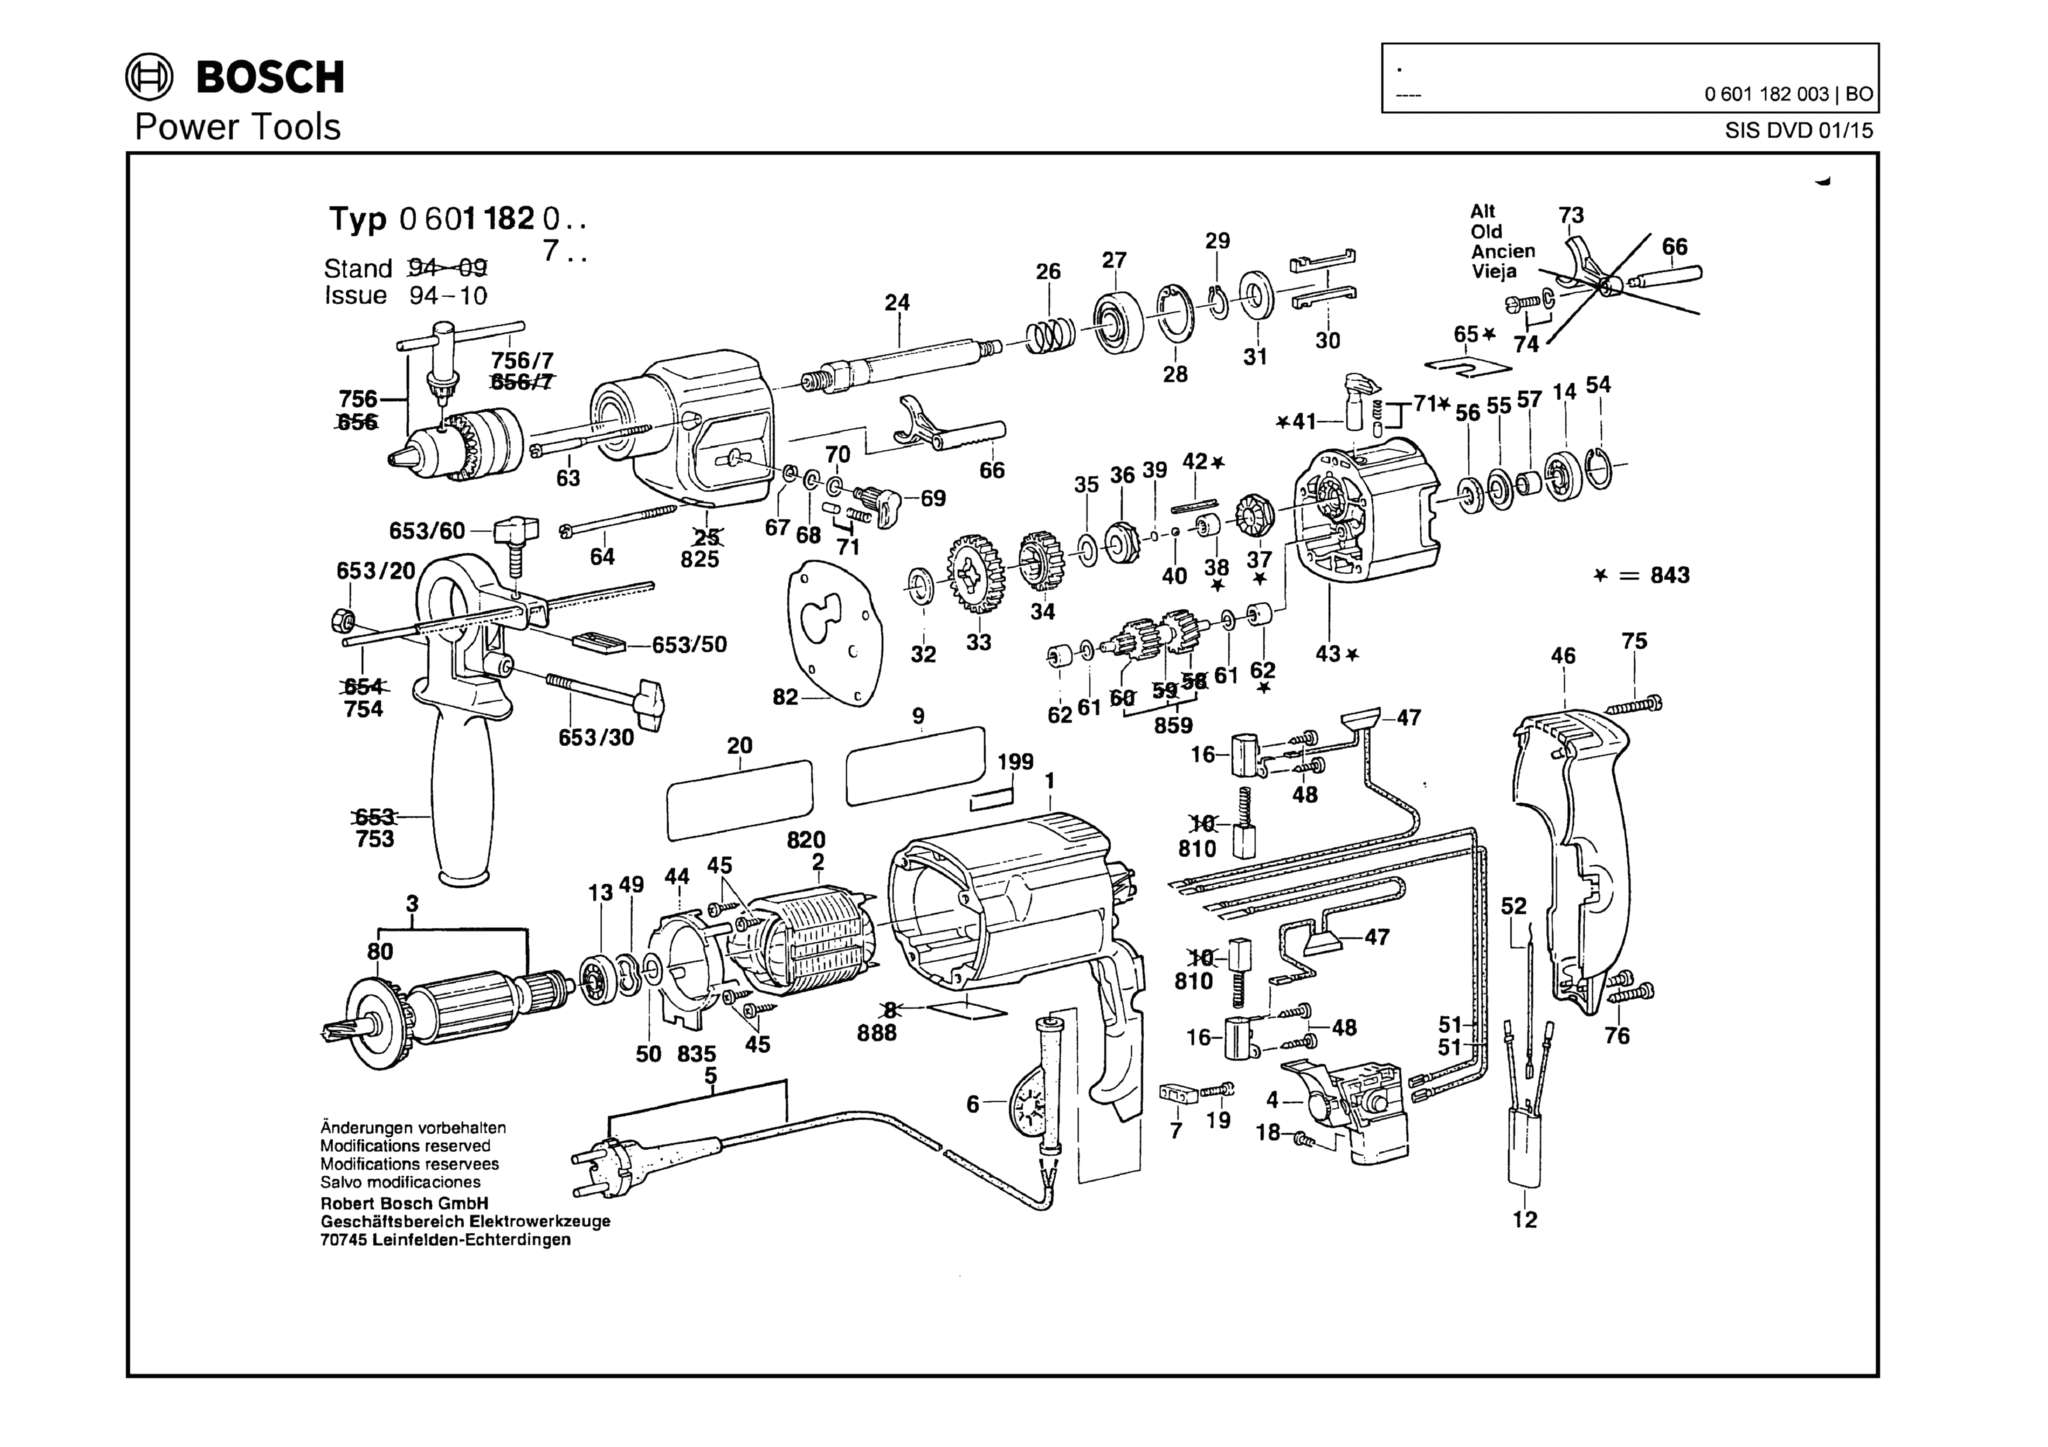 Запчасти, схема и деталировка Bosch (ТИП 0601182003)